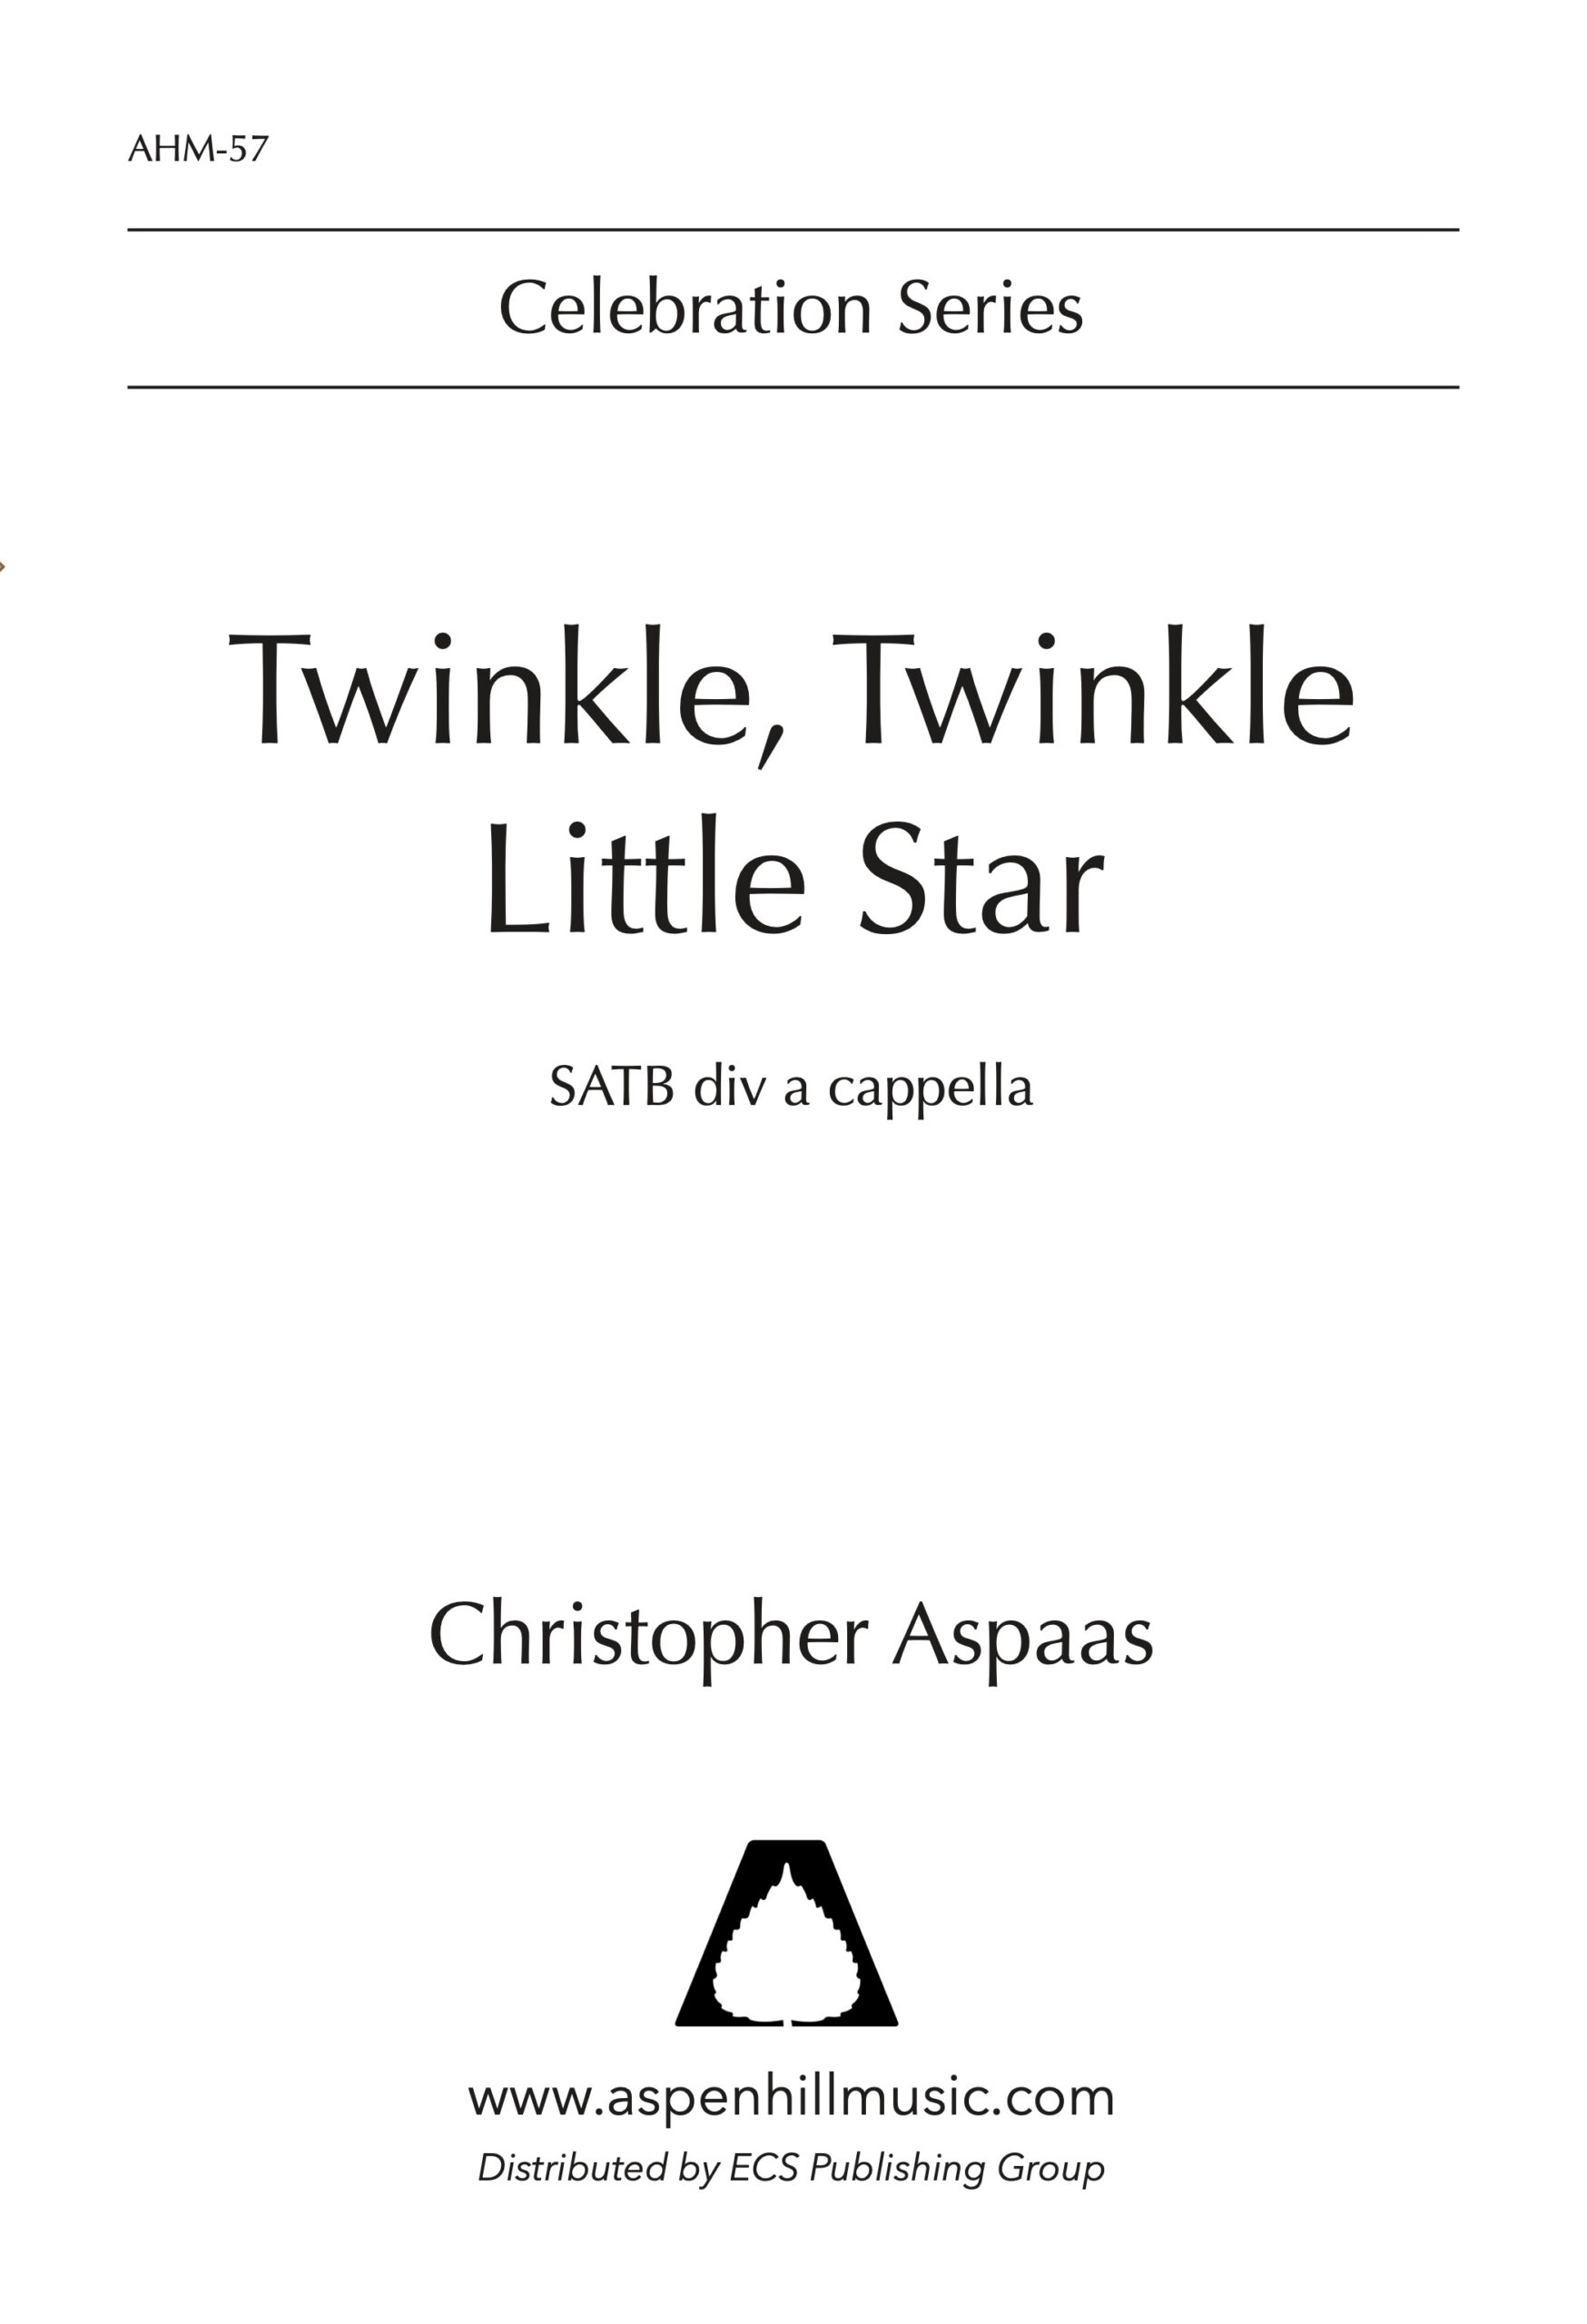 Twinkle, Twinkle Little Star - Aspen Hill Music